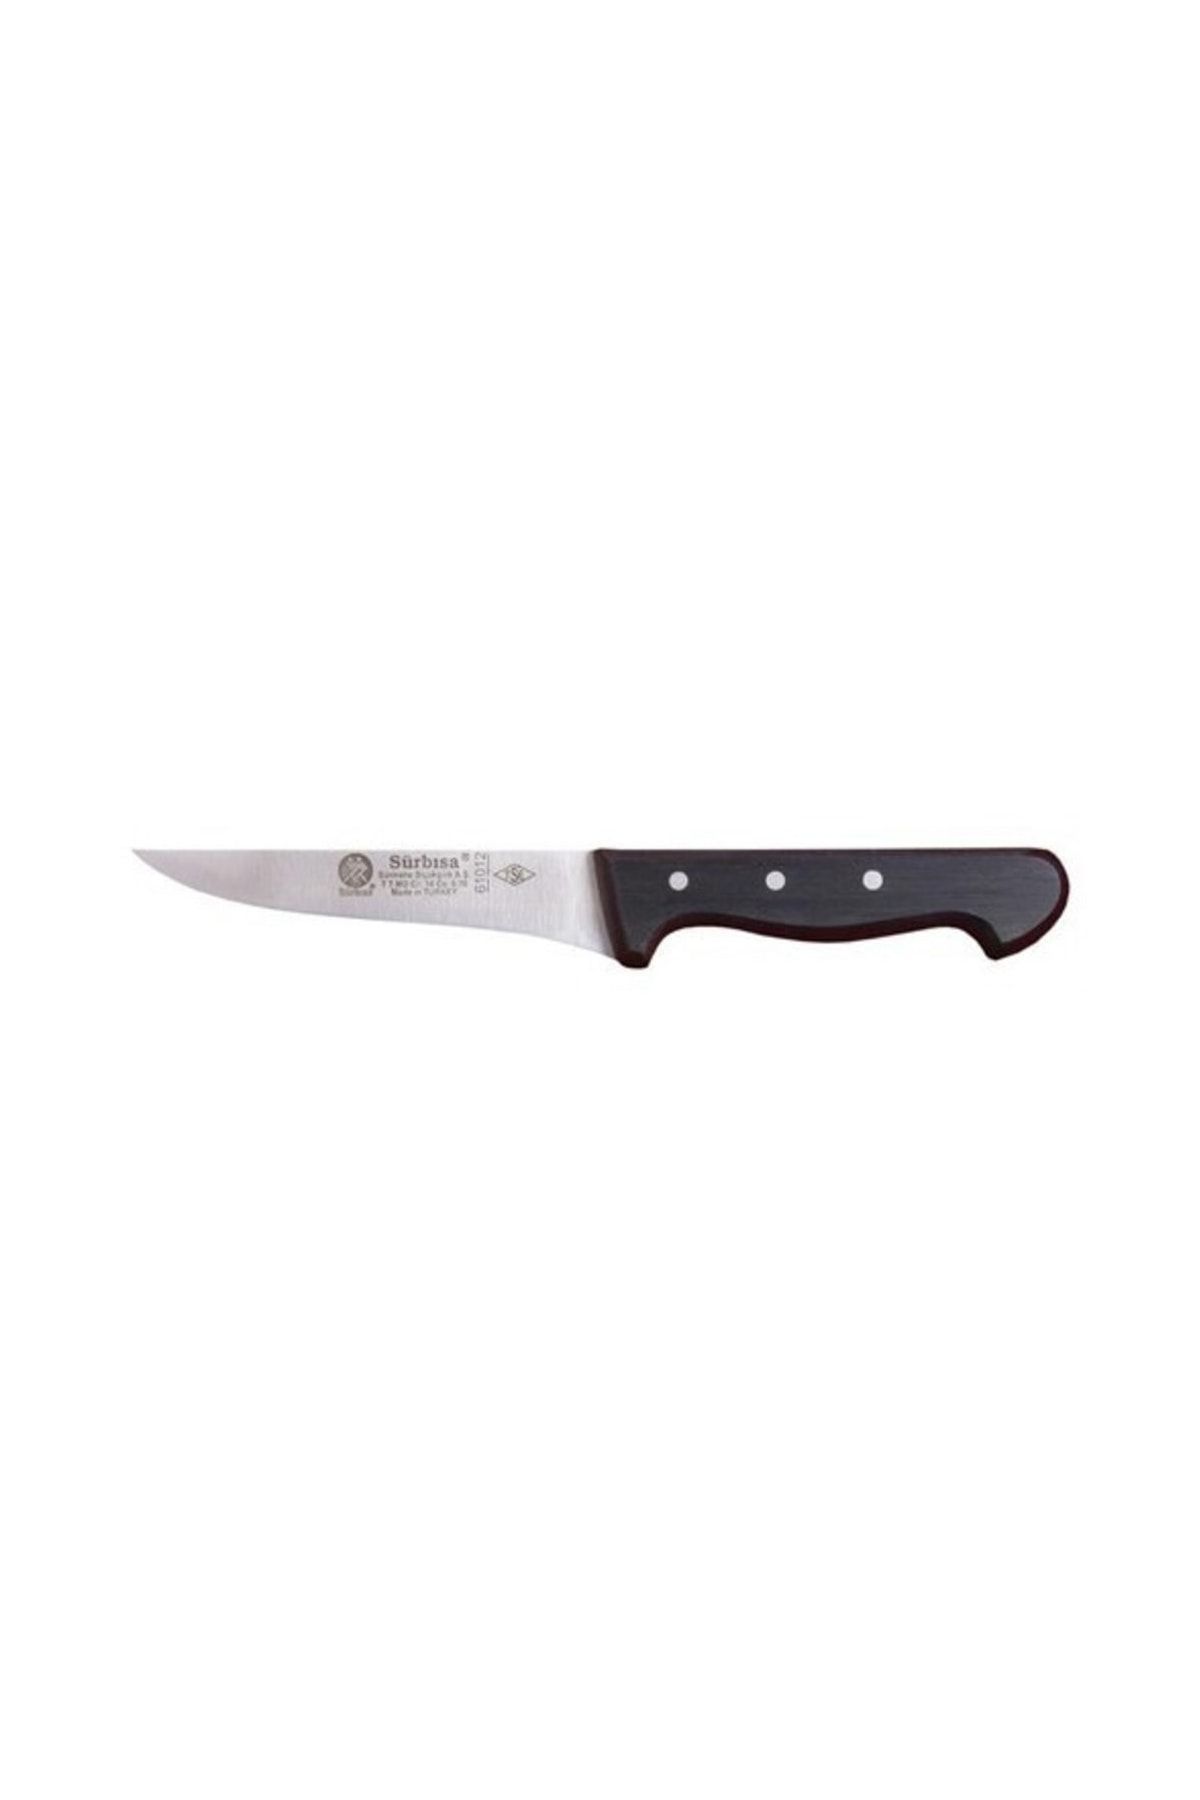 Sürbisa Mutfak Bıçağı  61012